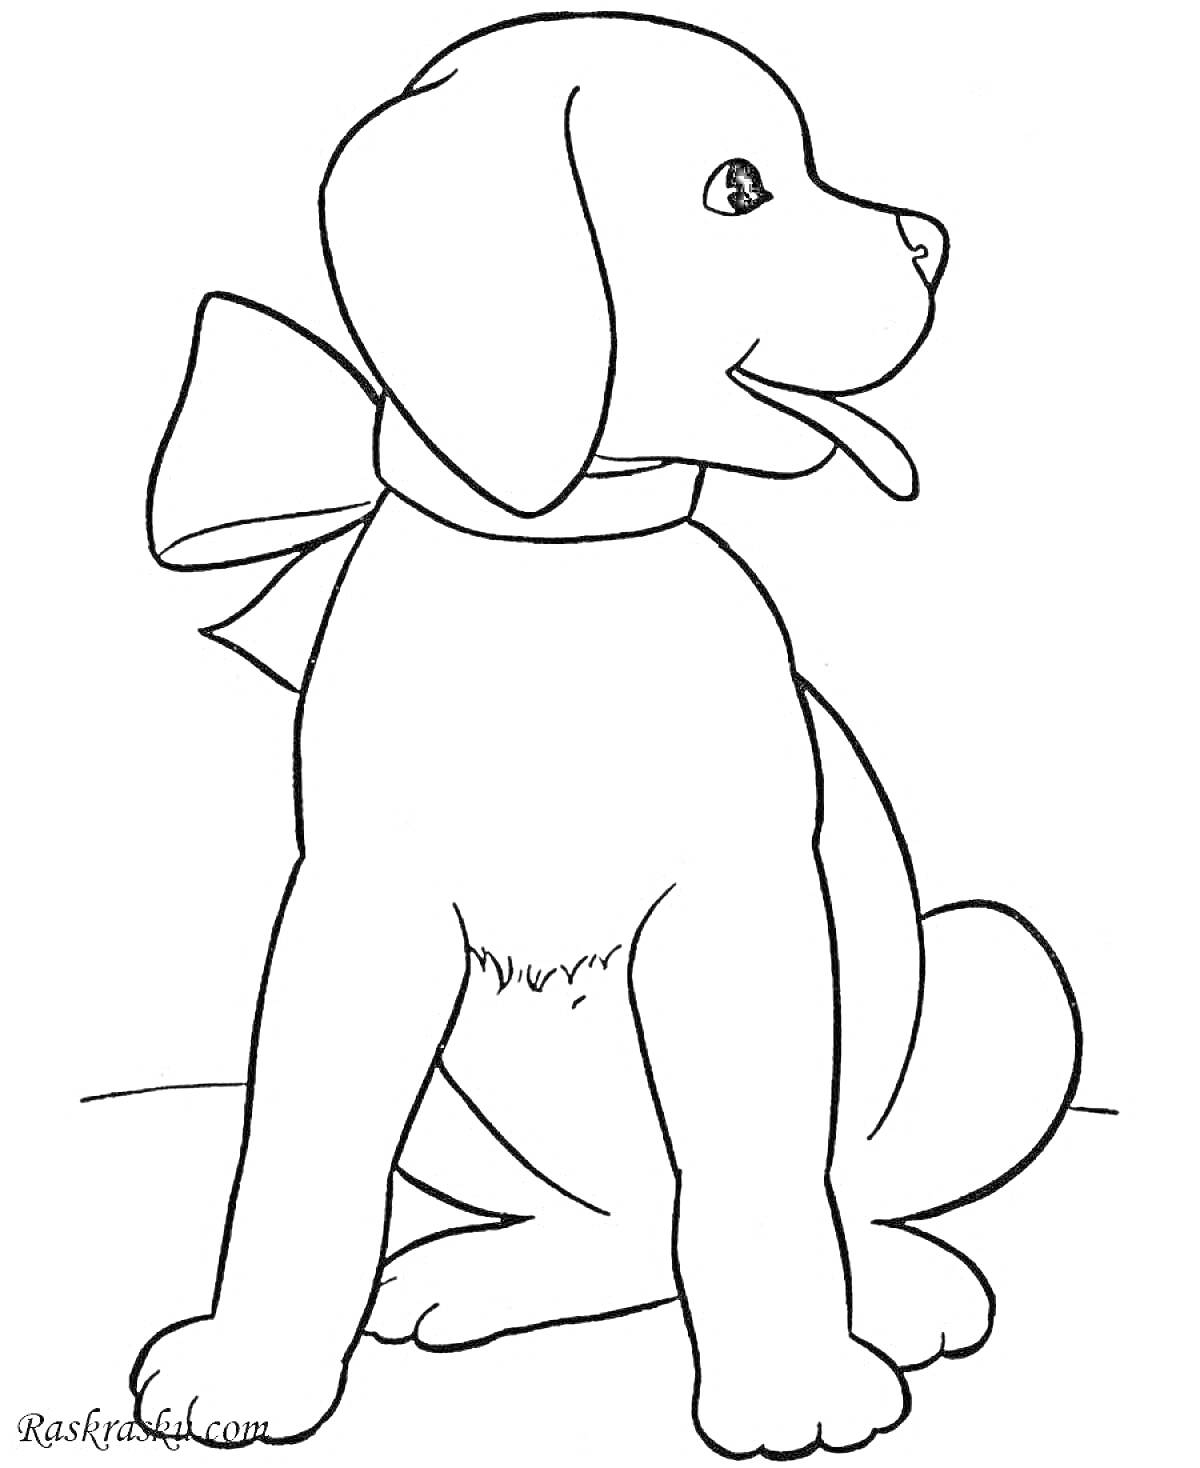 Раскраска щенок с бантом, сидящий и высовывающий язык